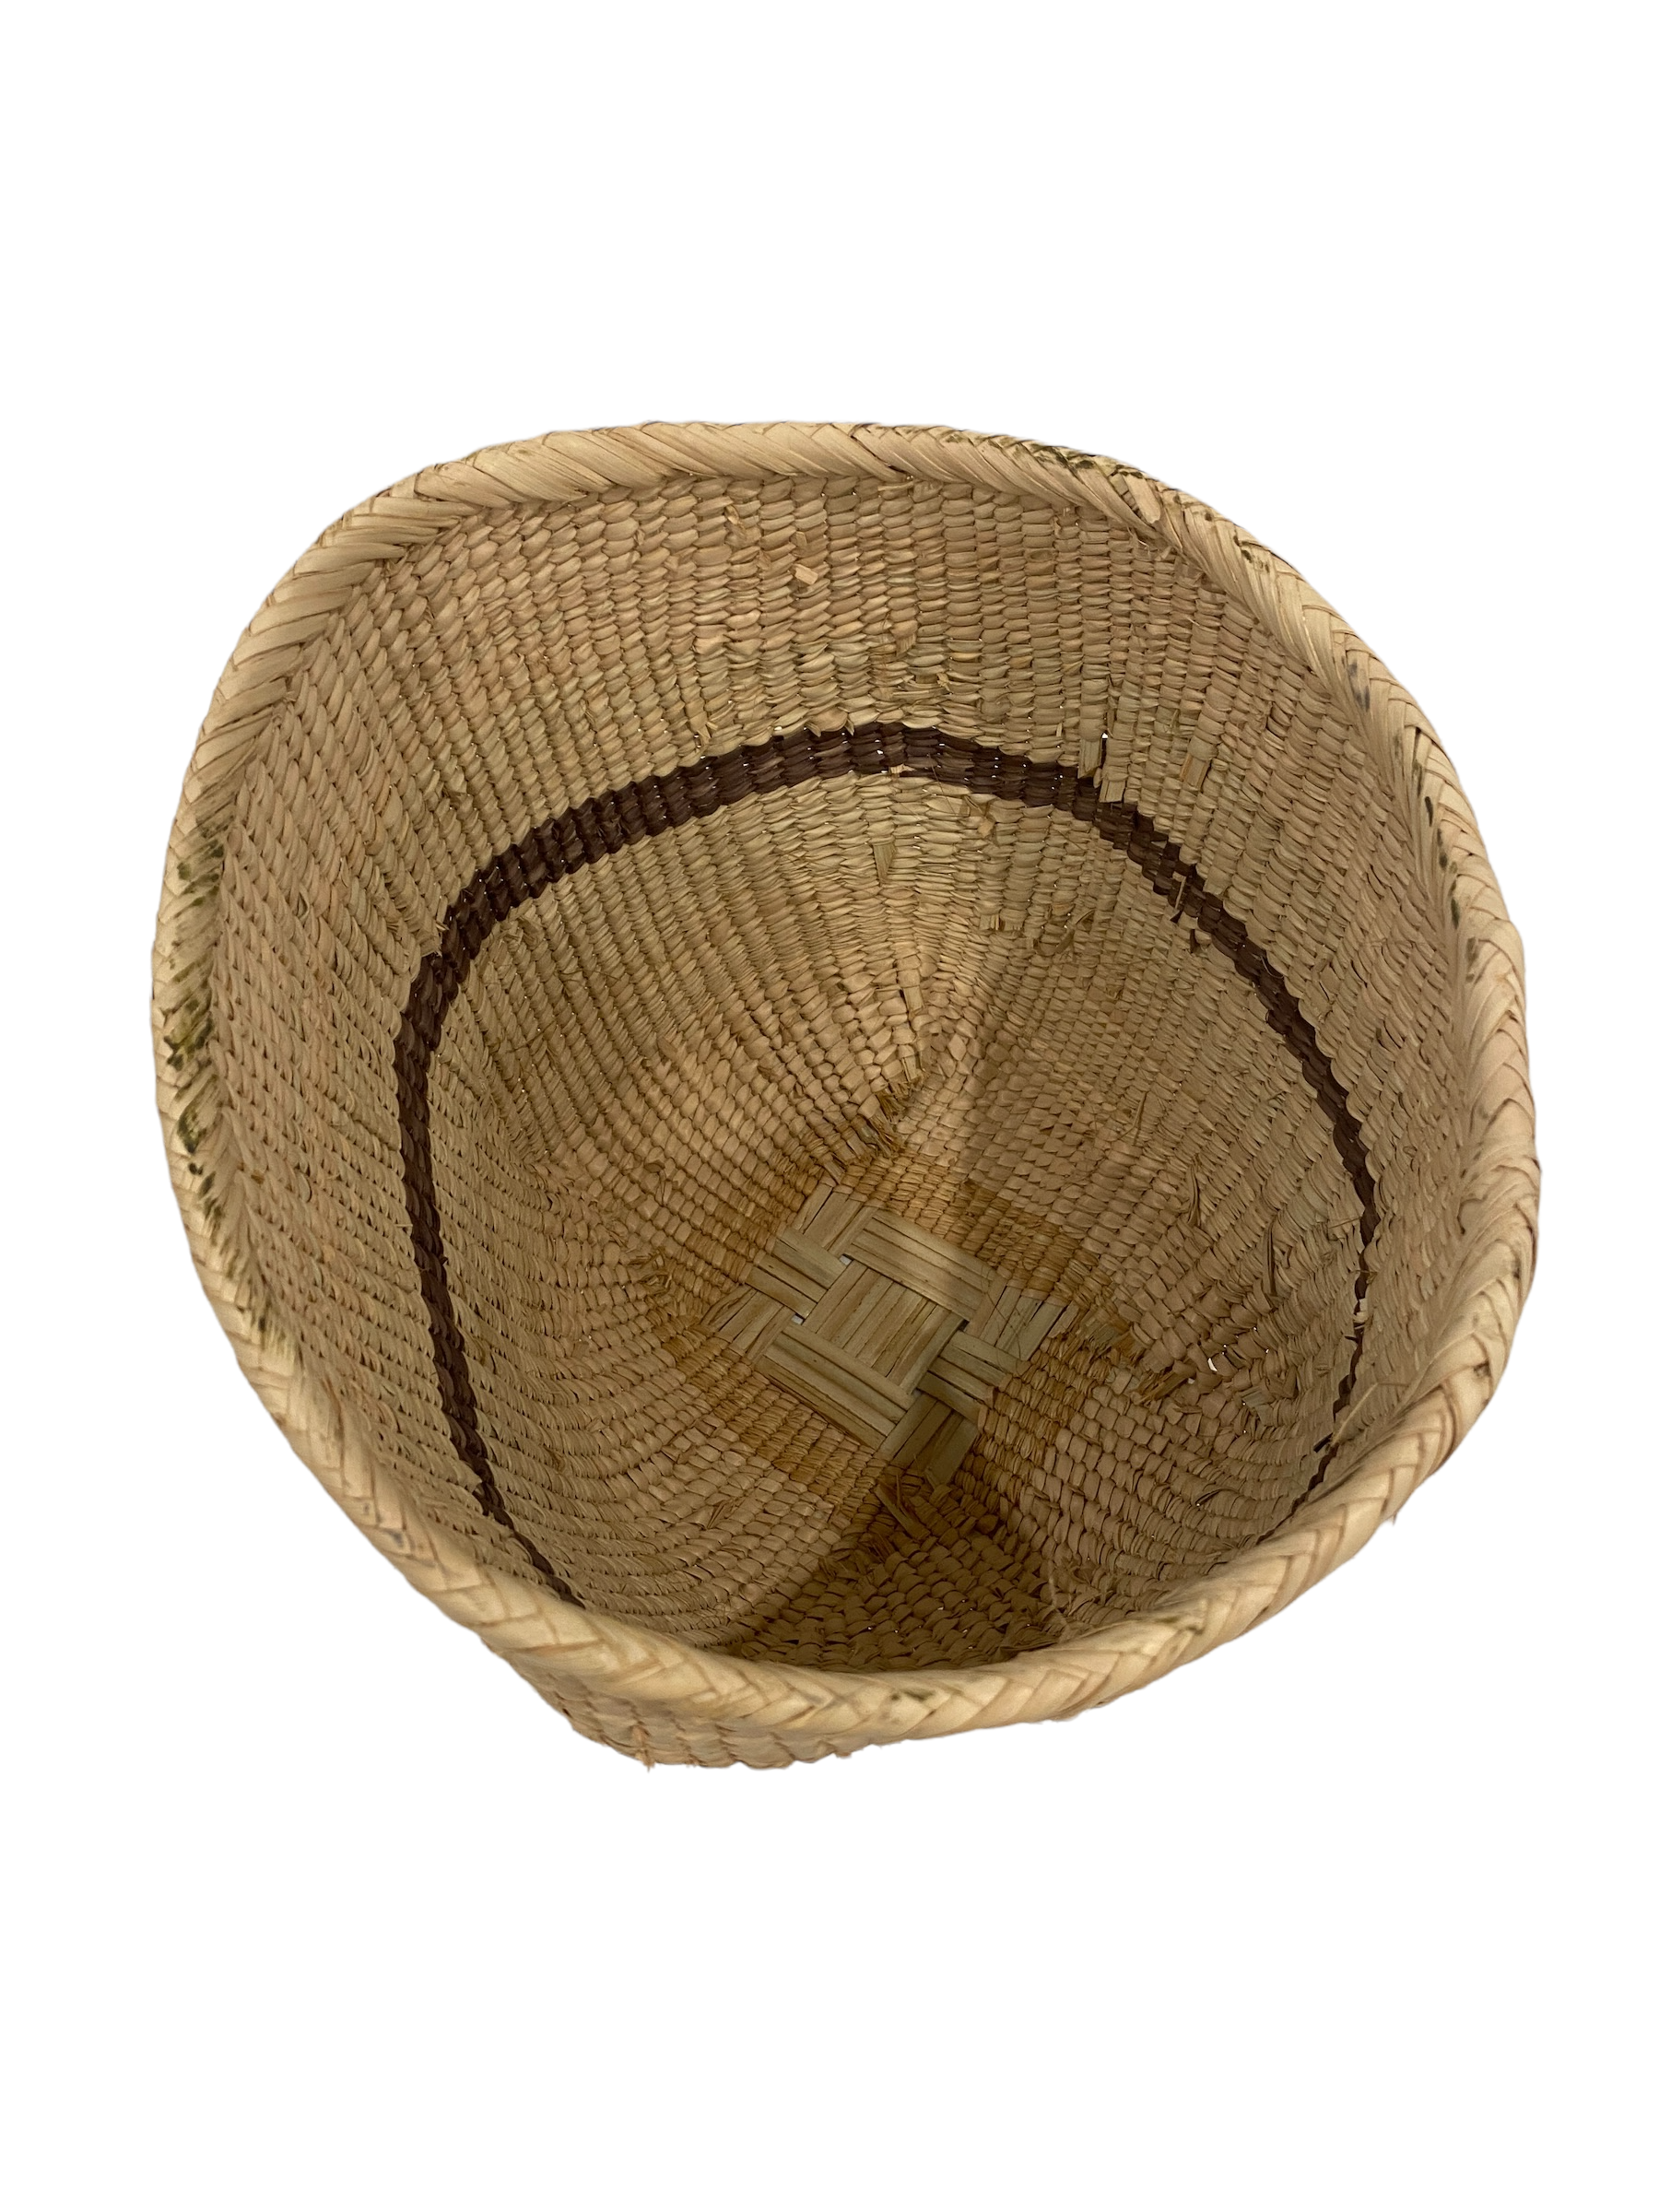 Tonga Basket Pot (6701)